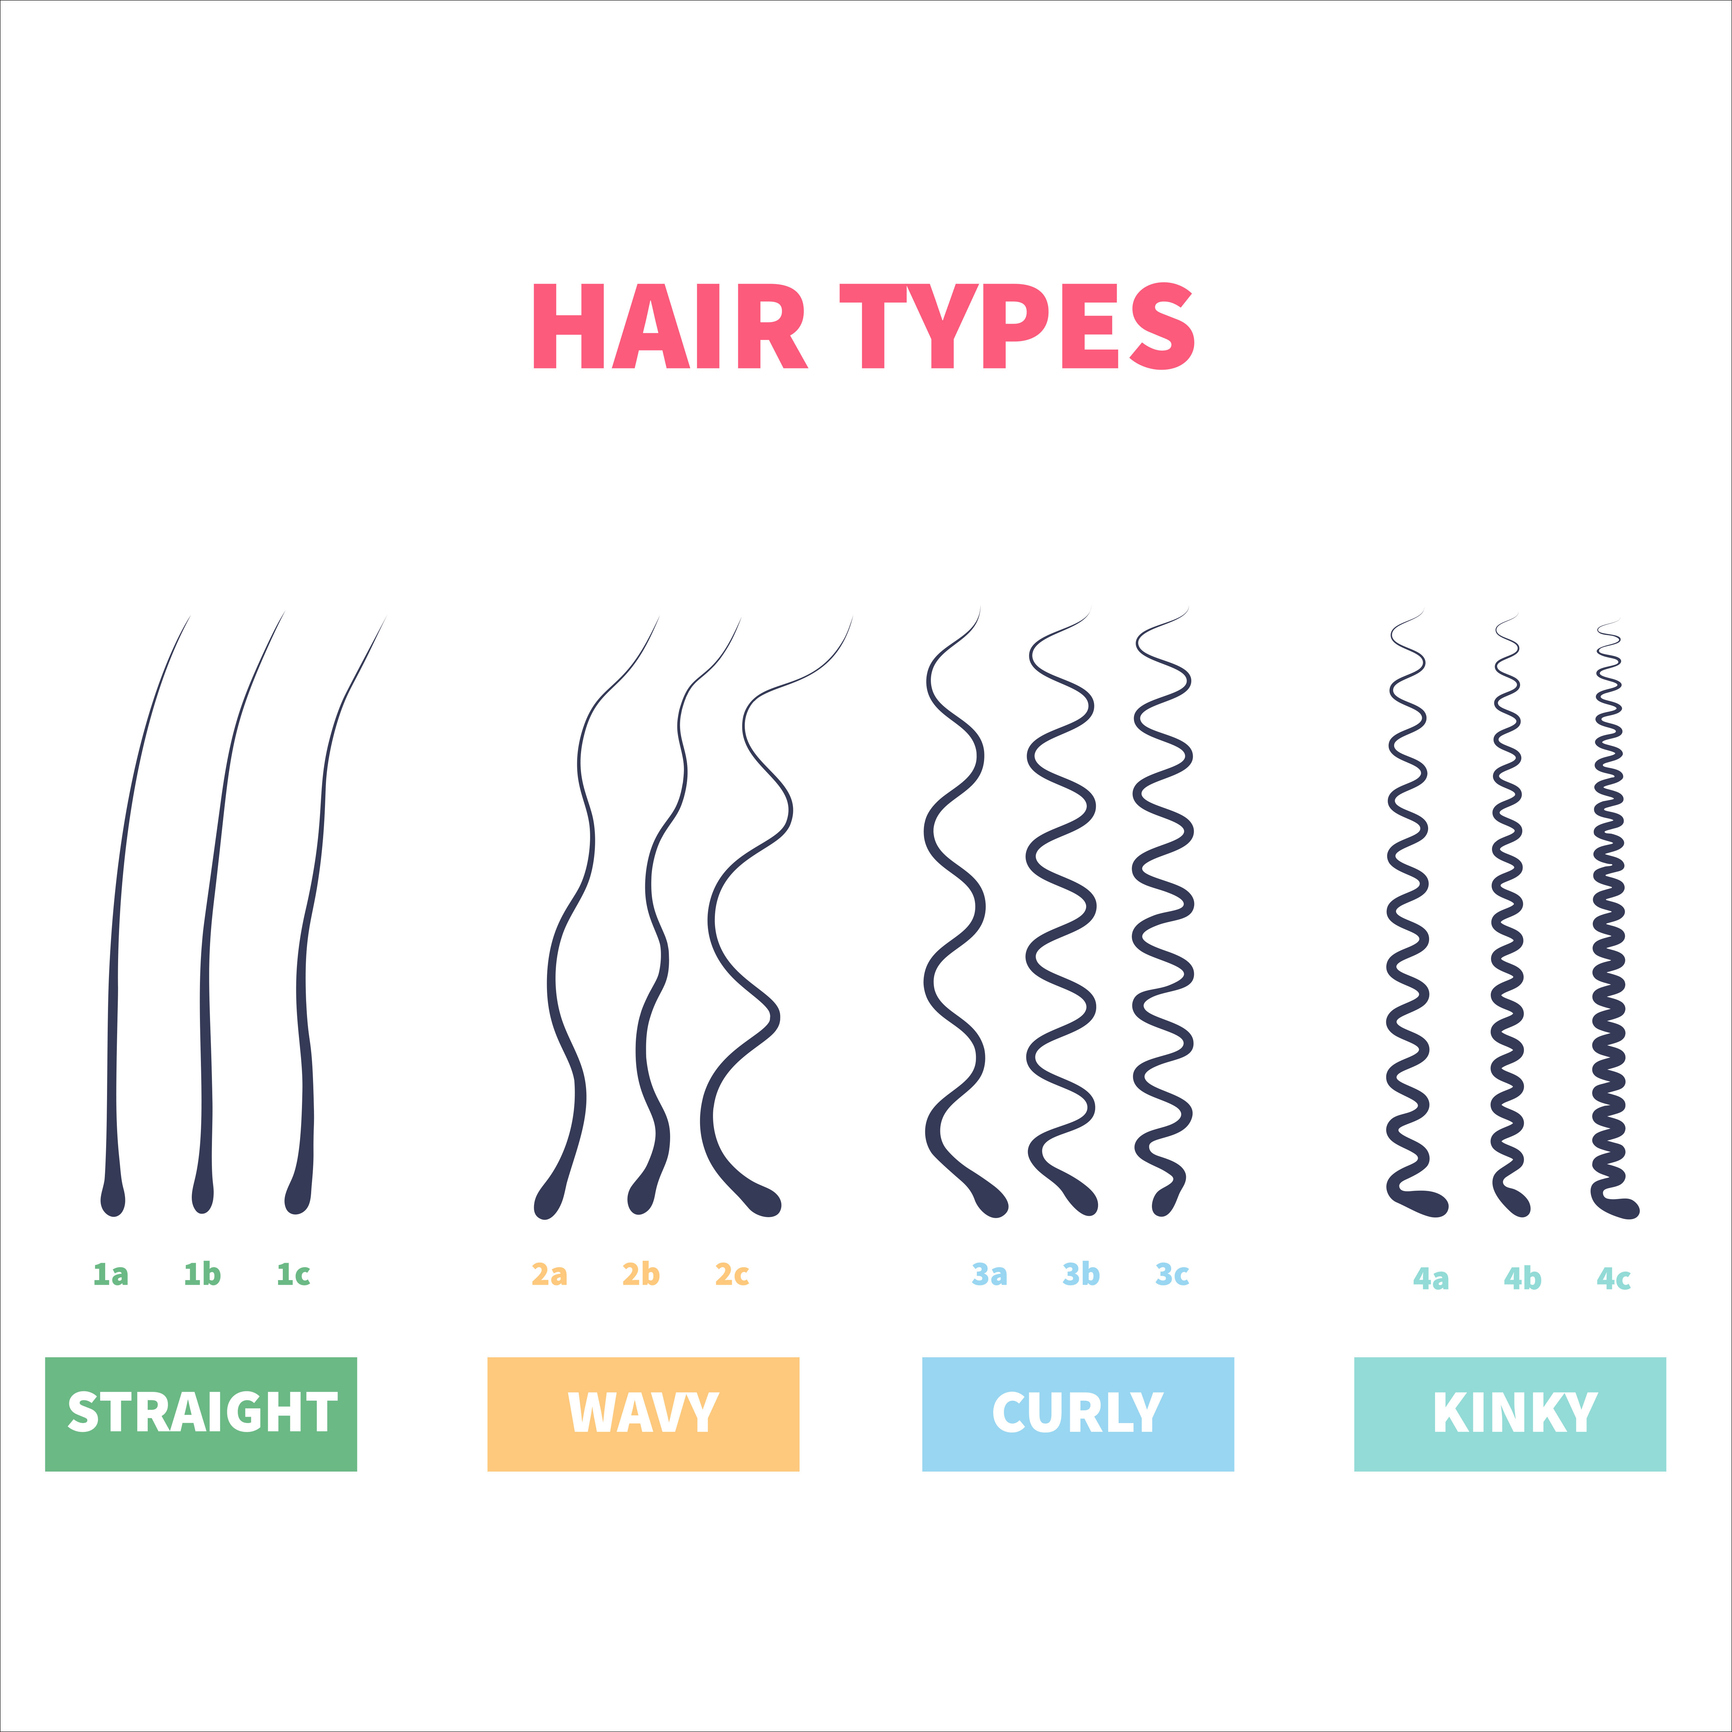 Hair texture chart